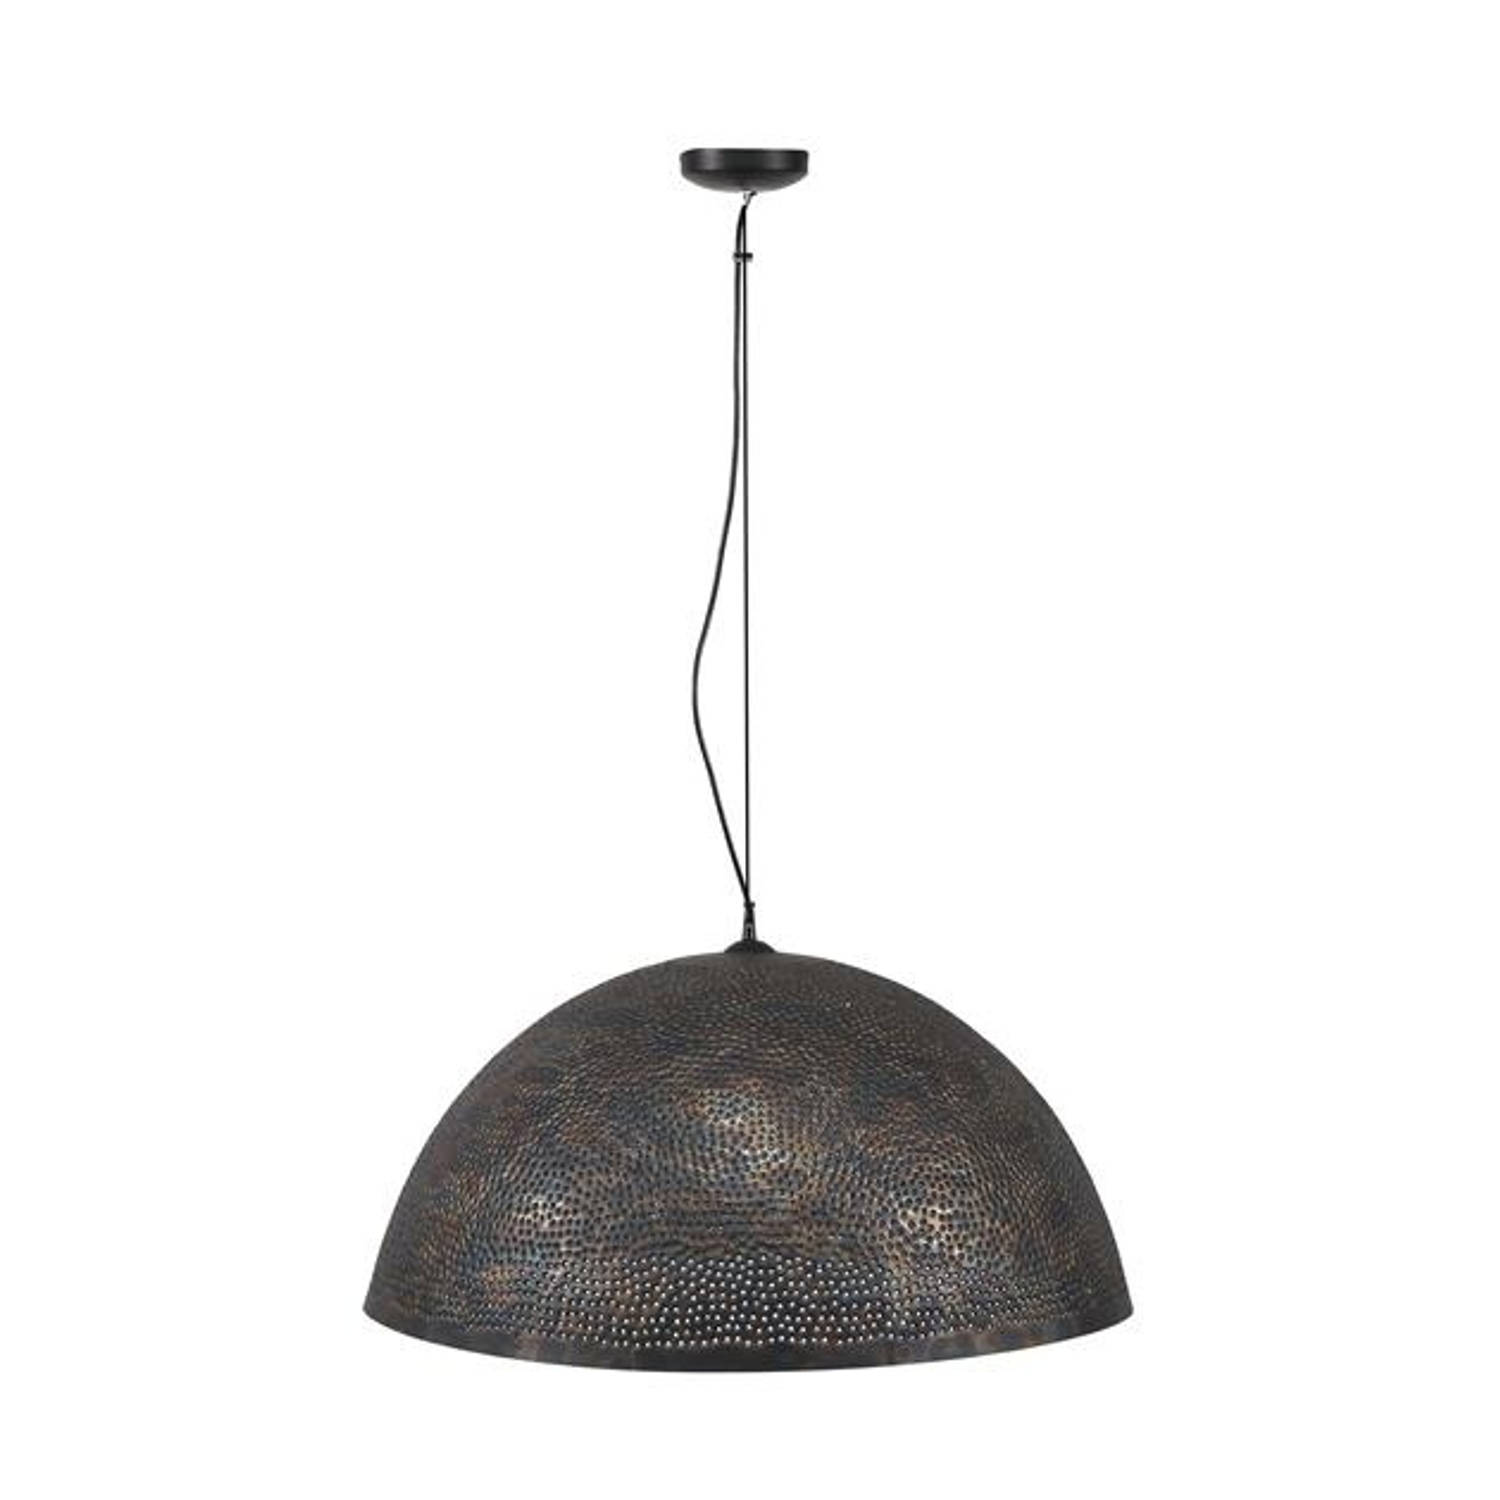 Hanglamp industrieel Aya zwart bruin 70 cm